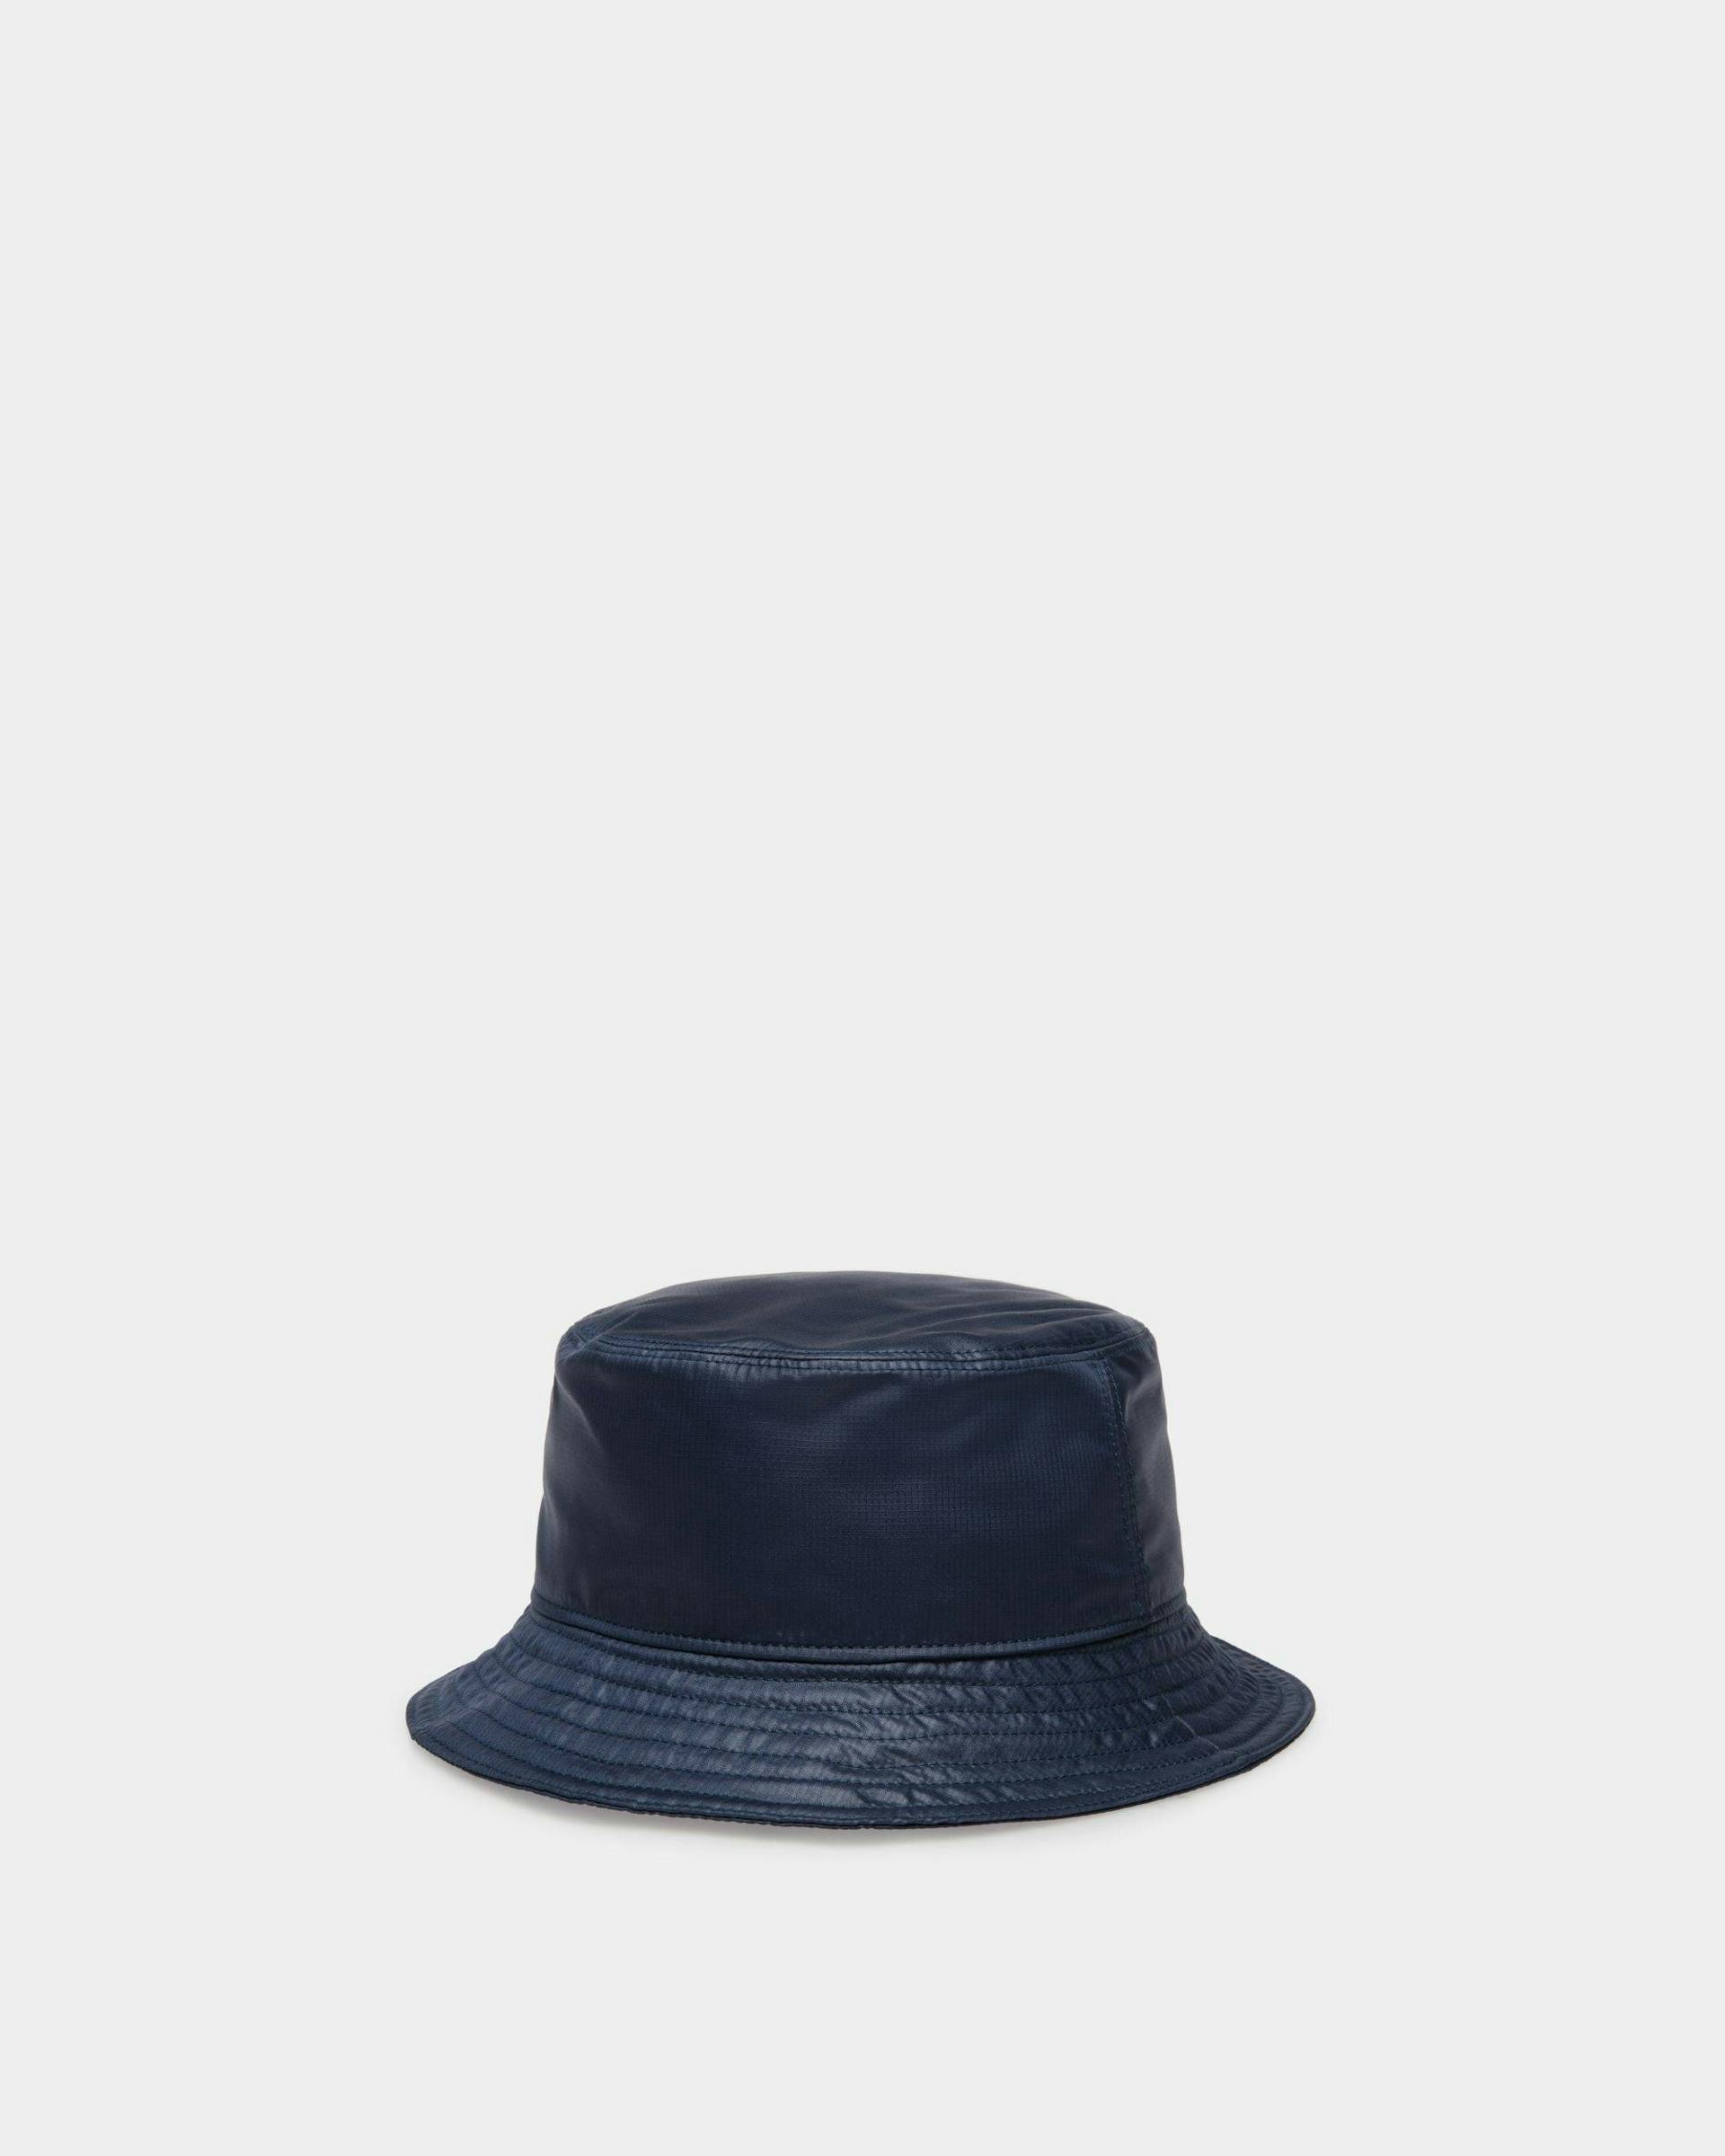 Men's Men's Bucket Hat in Navy Blue Technical Fabric | Bally | Still Life 3/4 Back